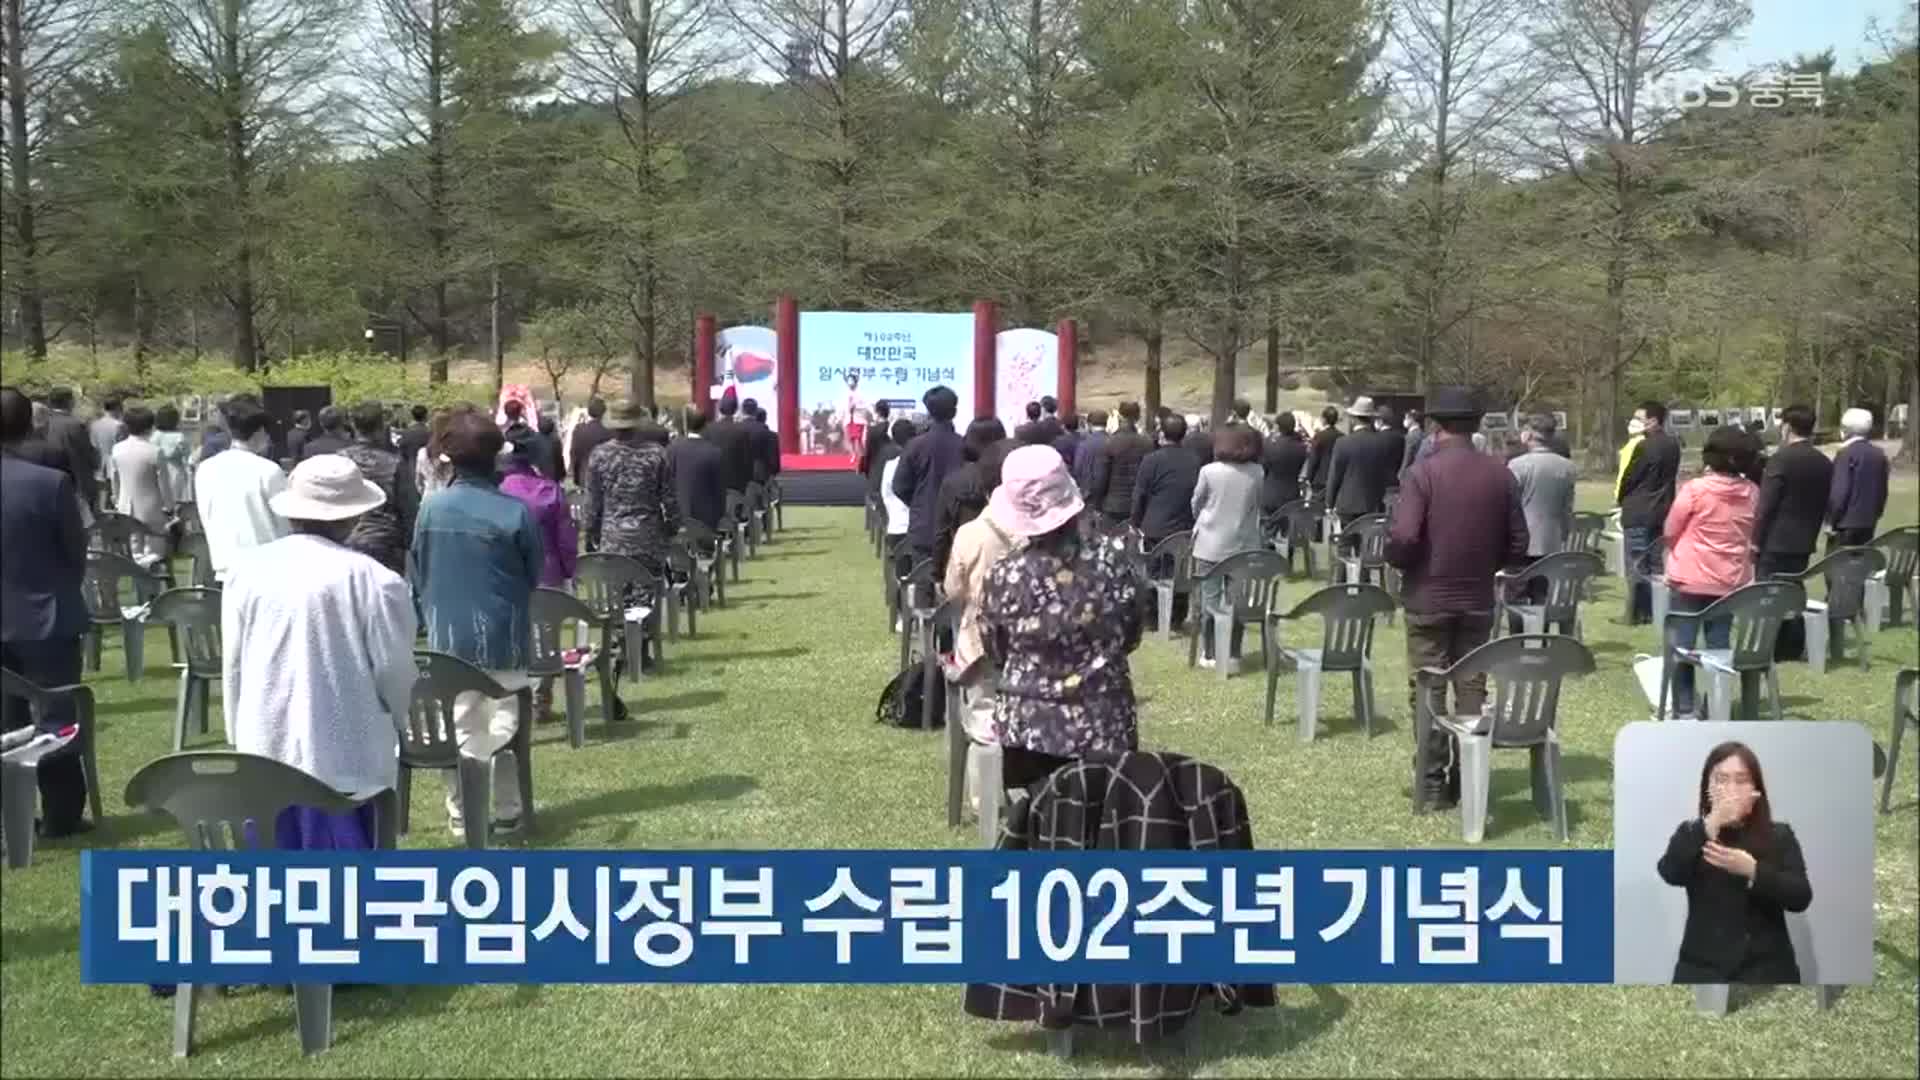 대한민국임시정부 수립 102주년 기념식 